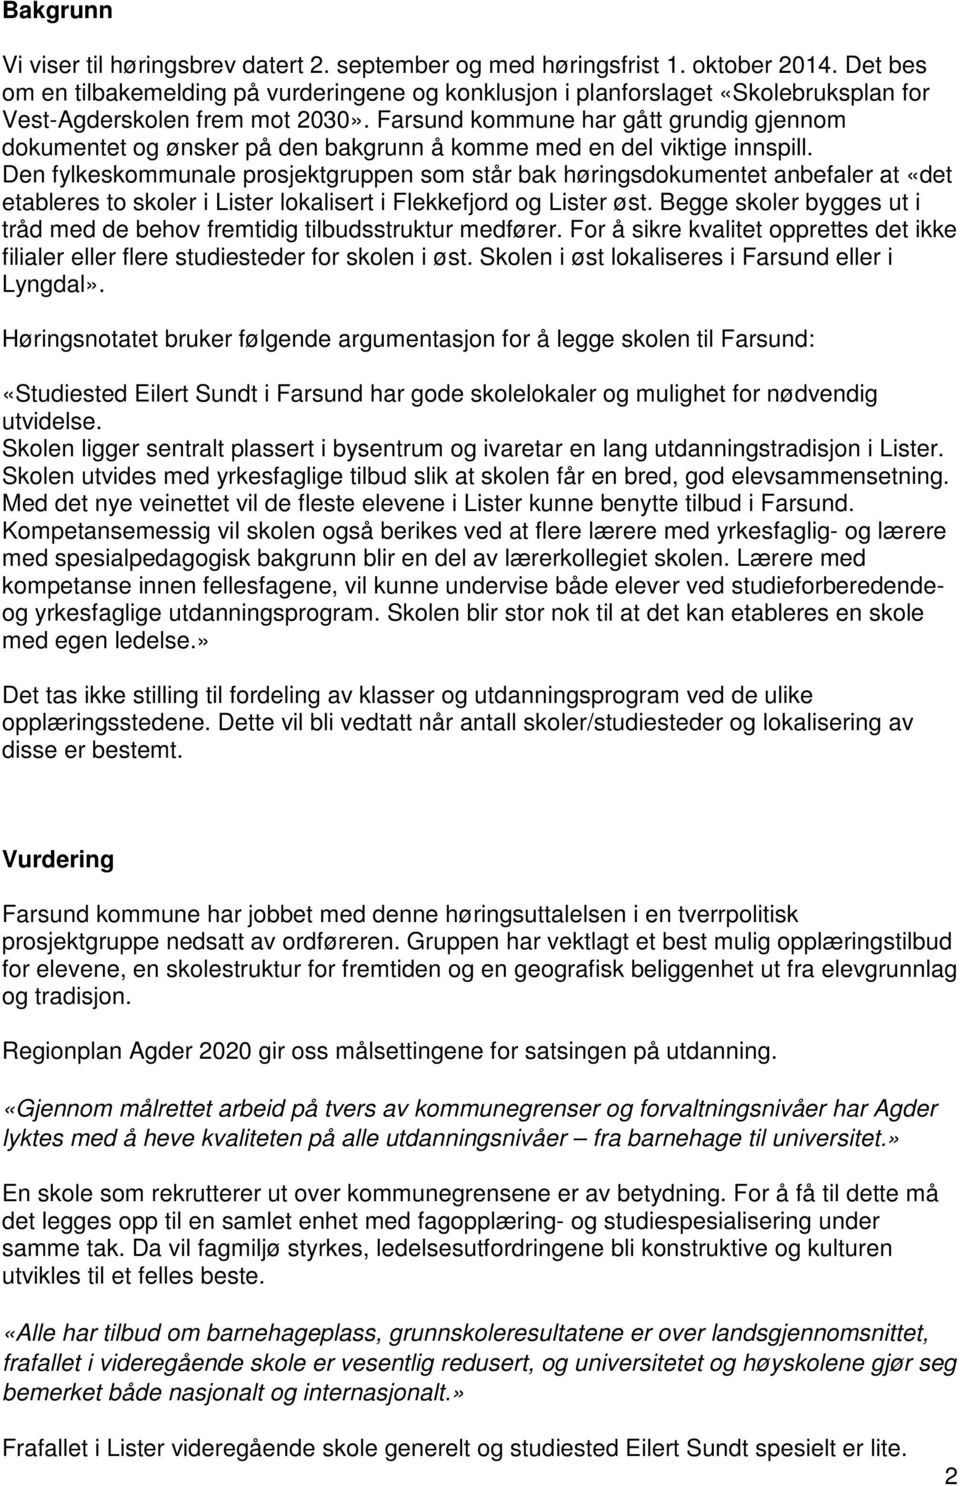 Farsund kommune har gått grundig gjennom dokumentet og ønsker på den bakgrunn å komme med en del viktige innspill.